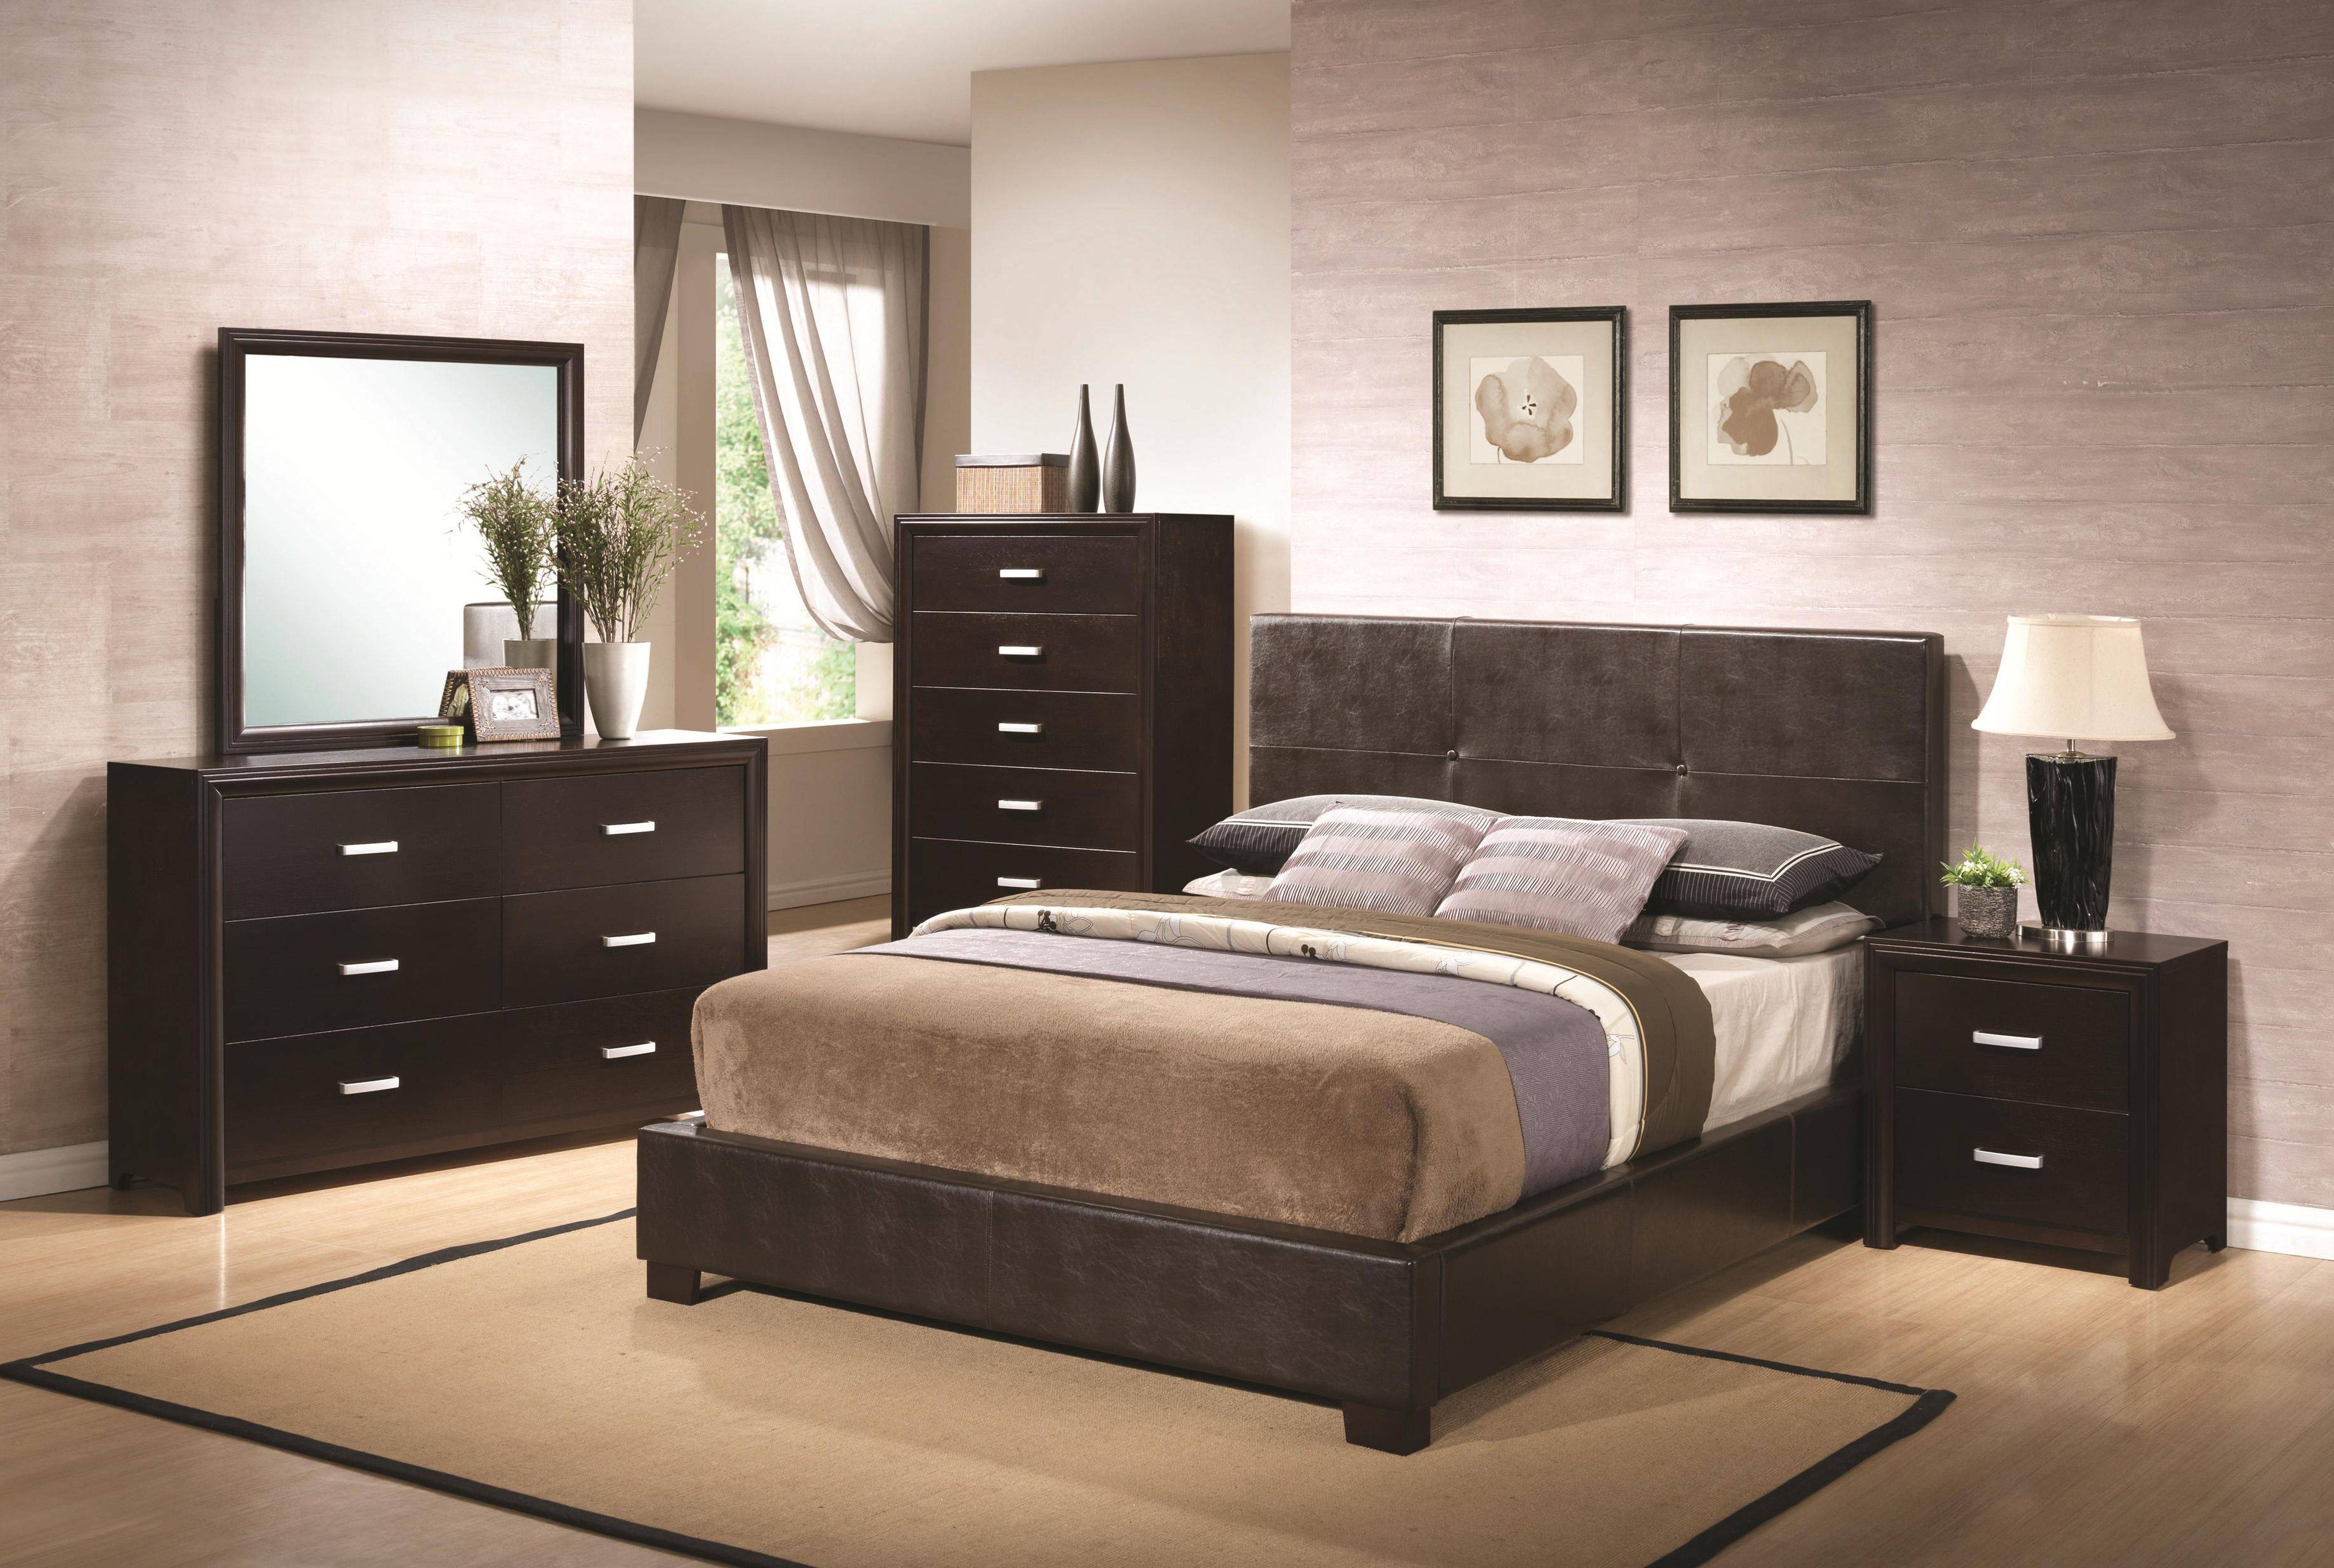 slimline bedroom furniture ikea